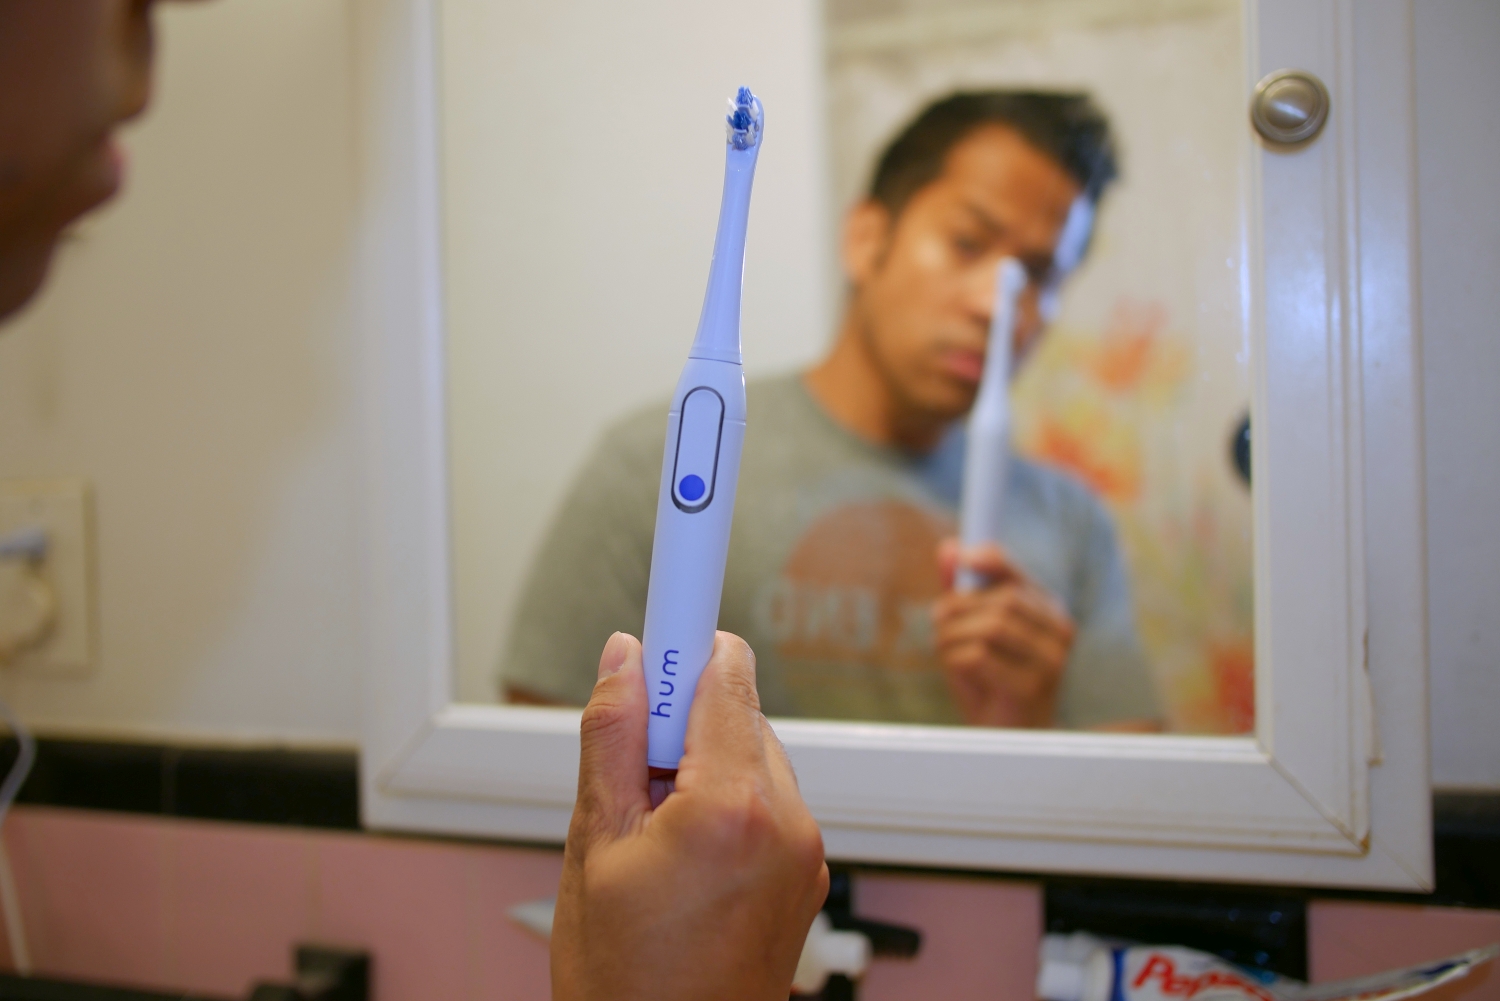 Obtenga dos cepillos de dientes eléctricos inteligentes Colgate por $ 30 hoy |  Tendencias digitales